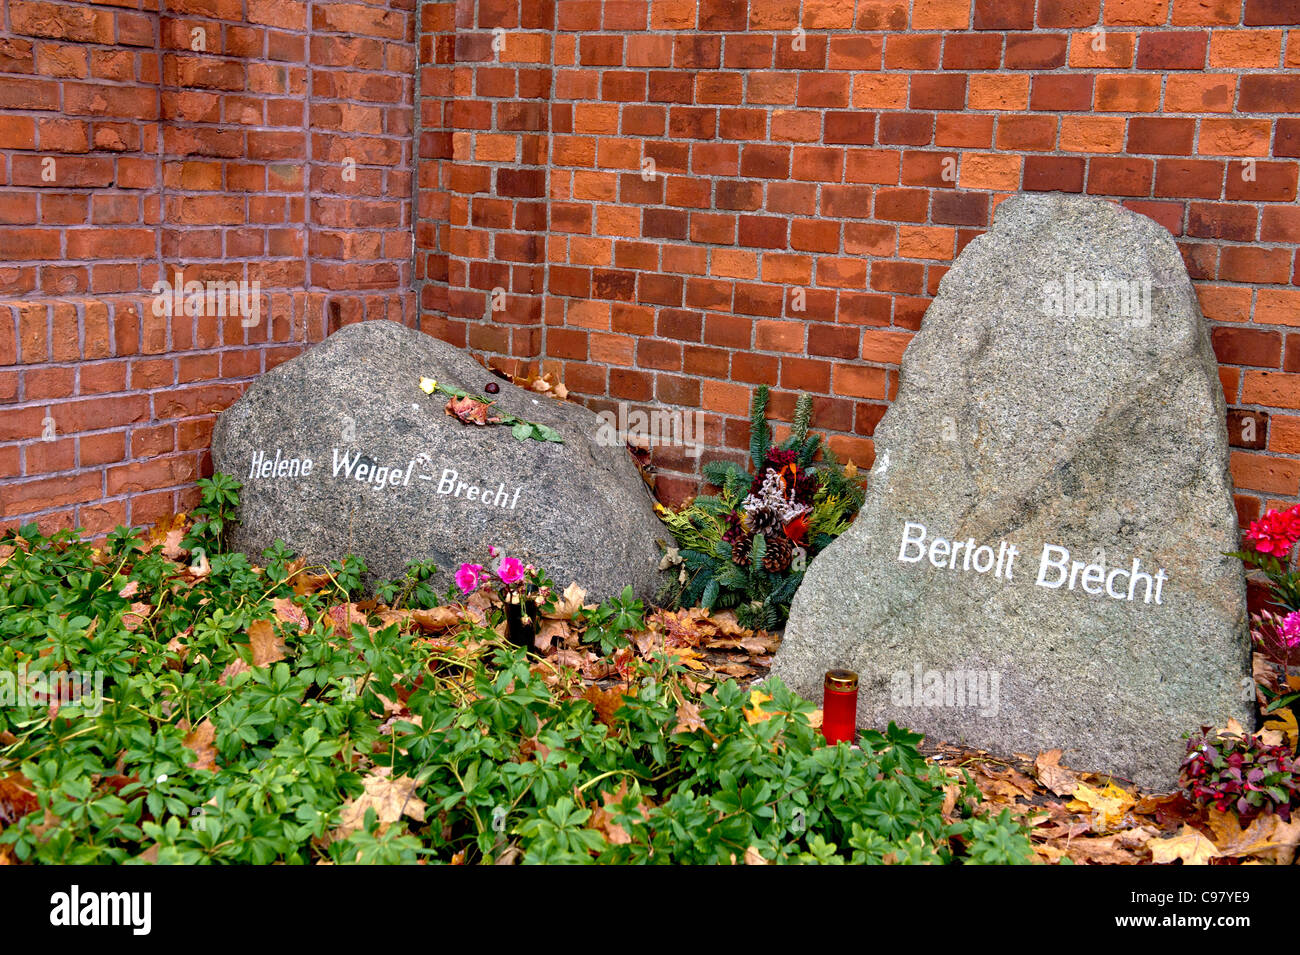 Dichtergrab auf dem Dorotheenstädtisches Friedhof in Berlin;  Author's Grave in Berlin: Bertolt Brecht Stock Photo